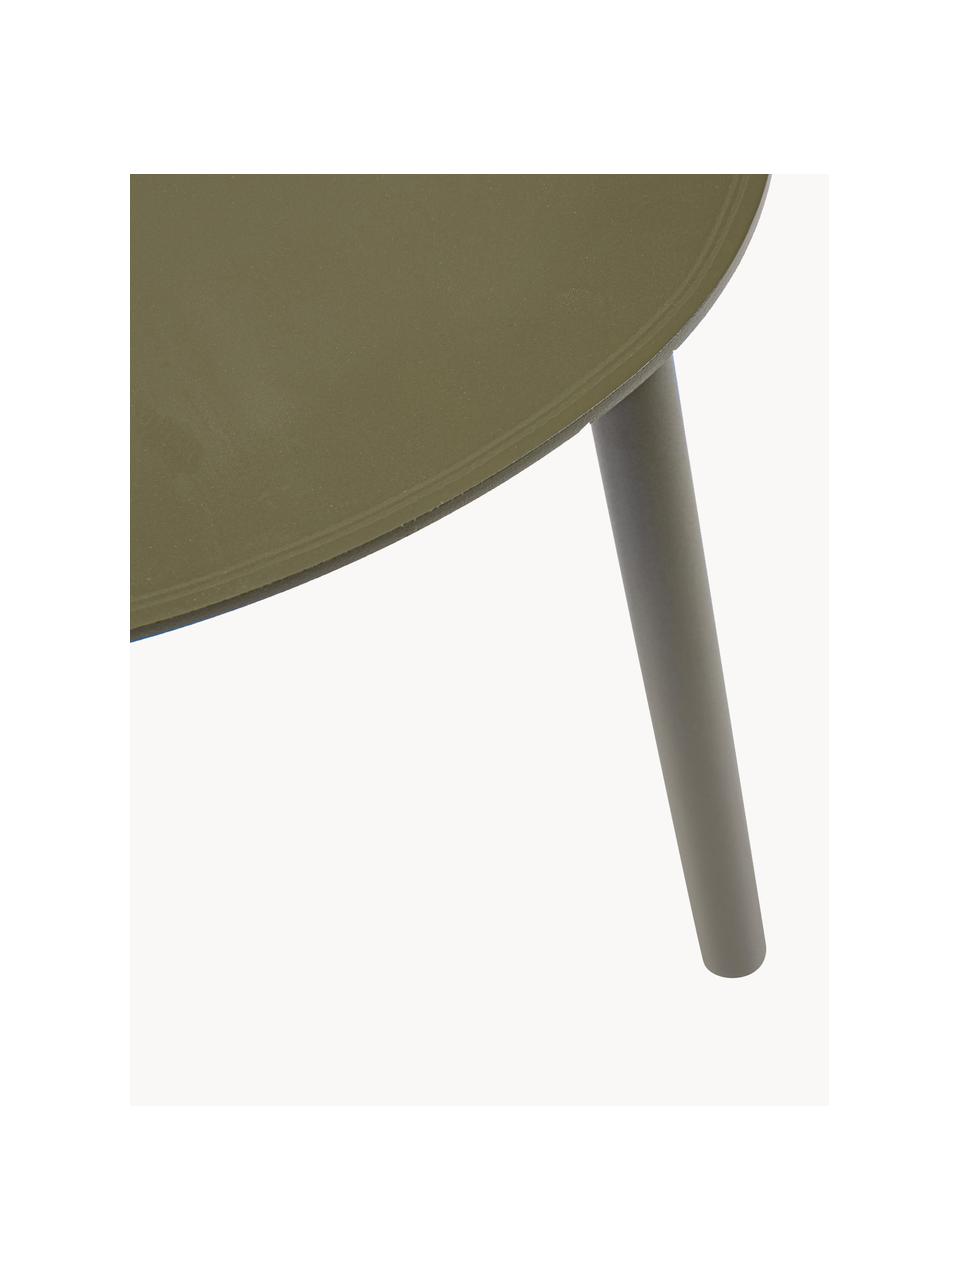 Owalny stolik kawowy Sparky, Aluminium malowane proszkowo, Oliwkowy zielony, S 55 x G 45 cm